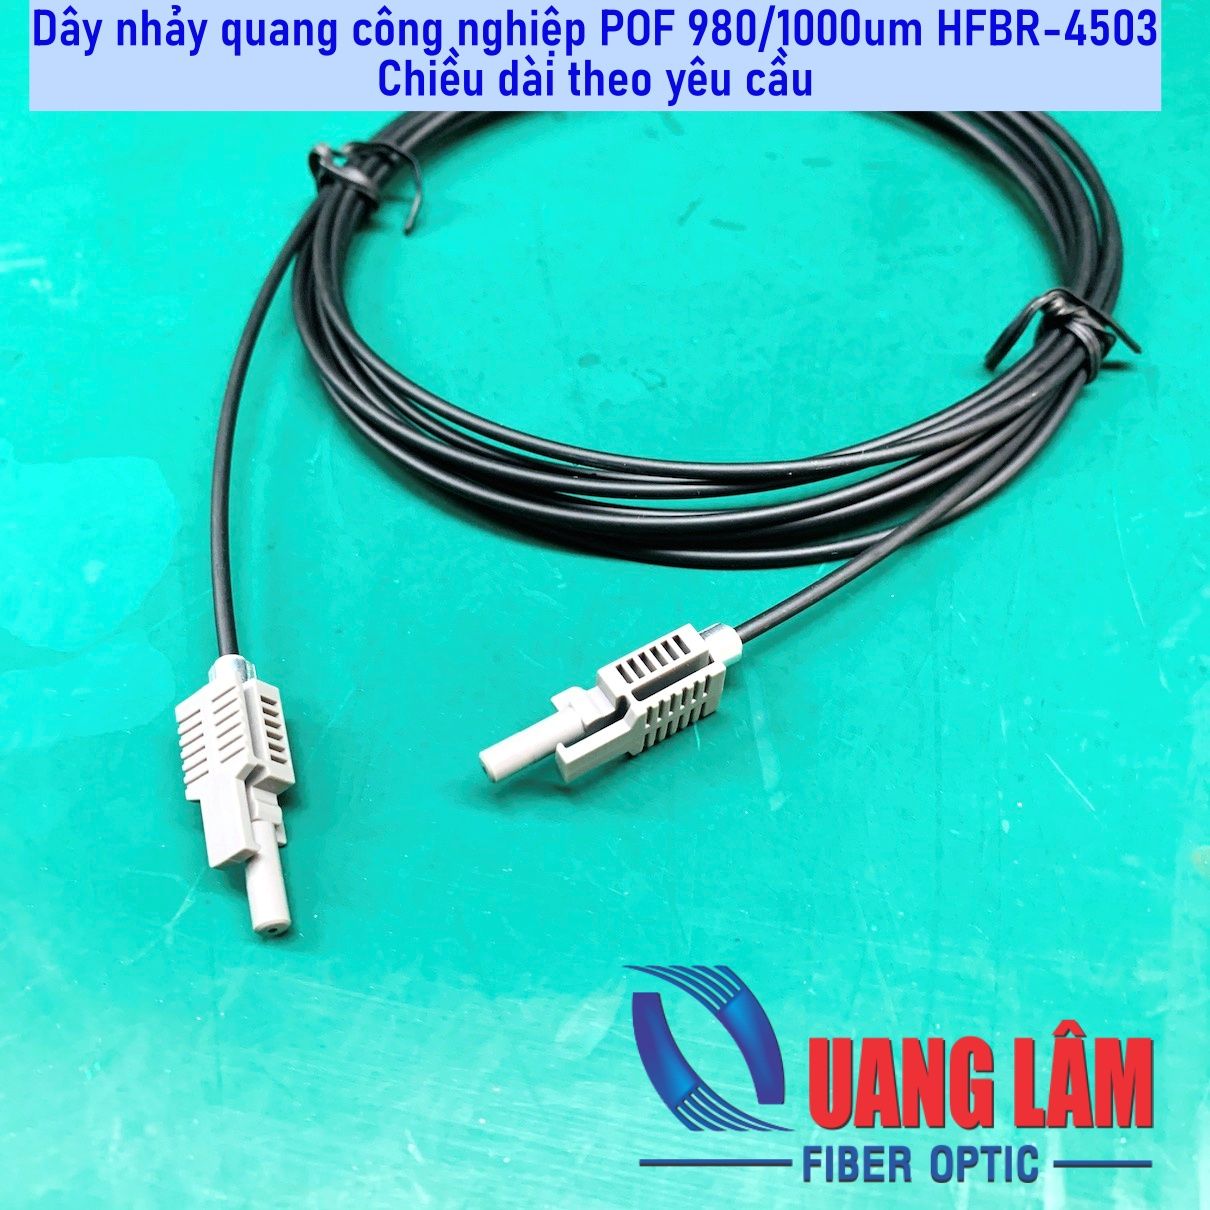 Dây Nhảy Quang Công Nghiệp POF 980/1000um HFBR-4503 Simplex - Chiều dài theo yêu cầu